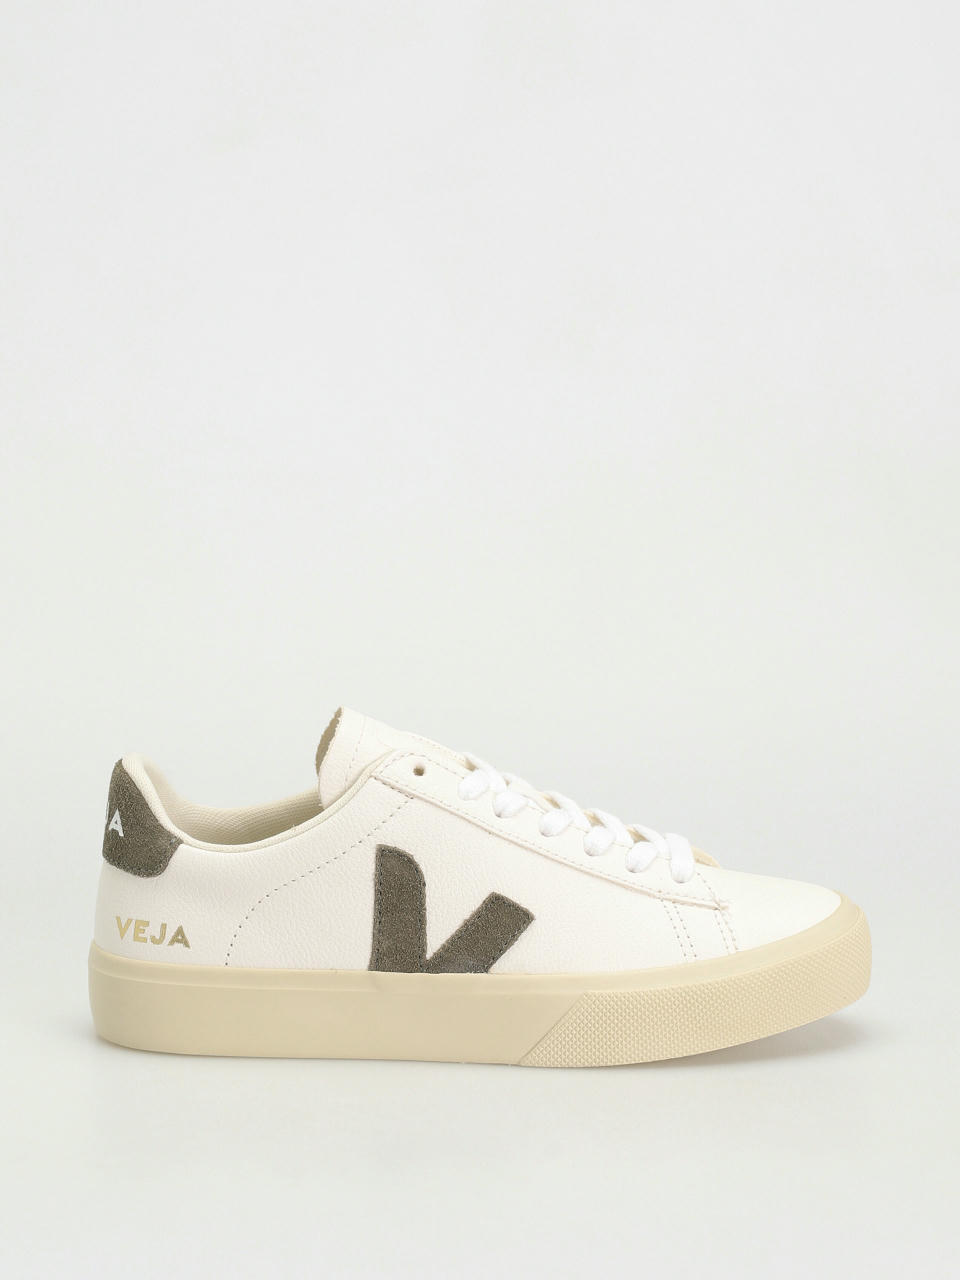 Veja Campo Shoes Wmn (extra white khaki)